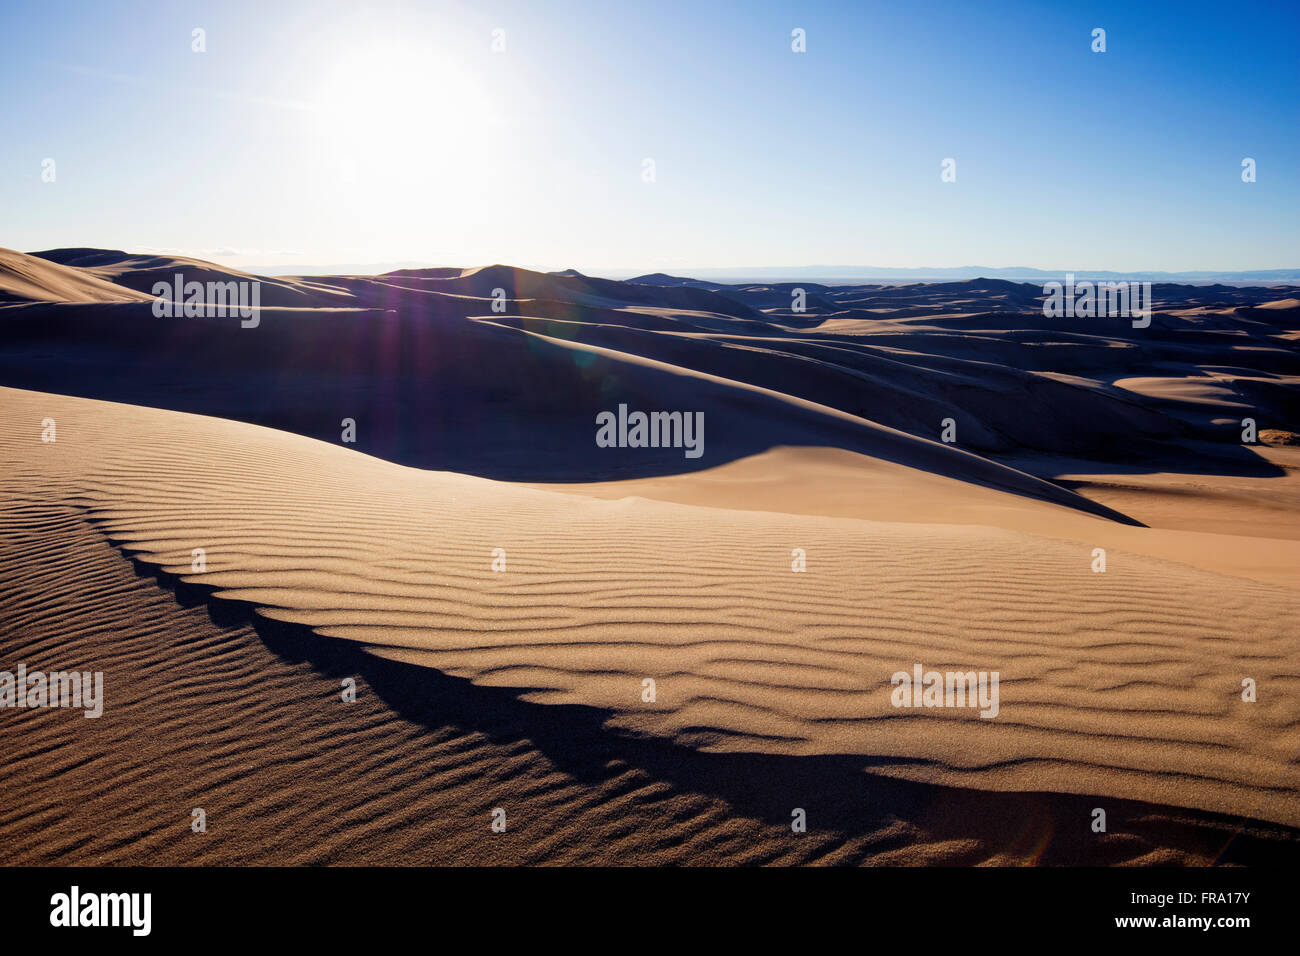 Soleil sur les dunes de sable du désert dans la région de Great Sand Dunes National Park, Colorado, USA. Banque D'Images